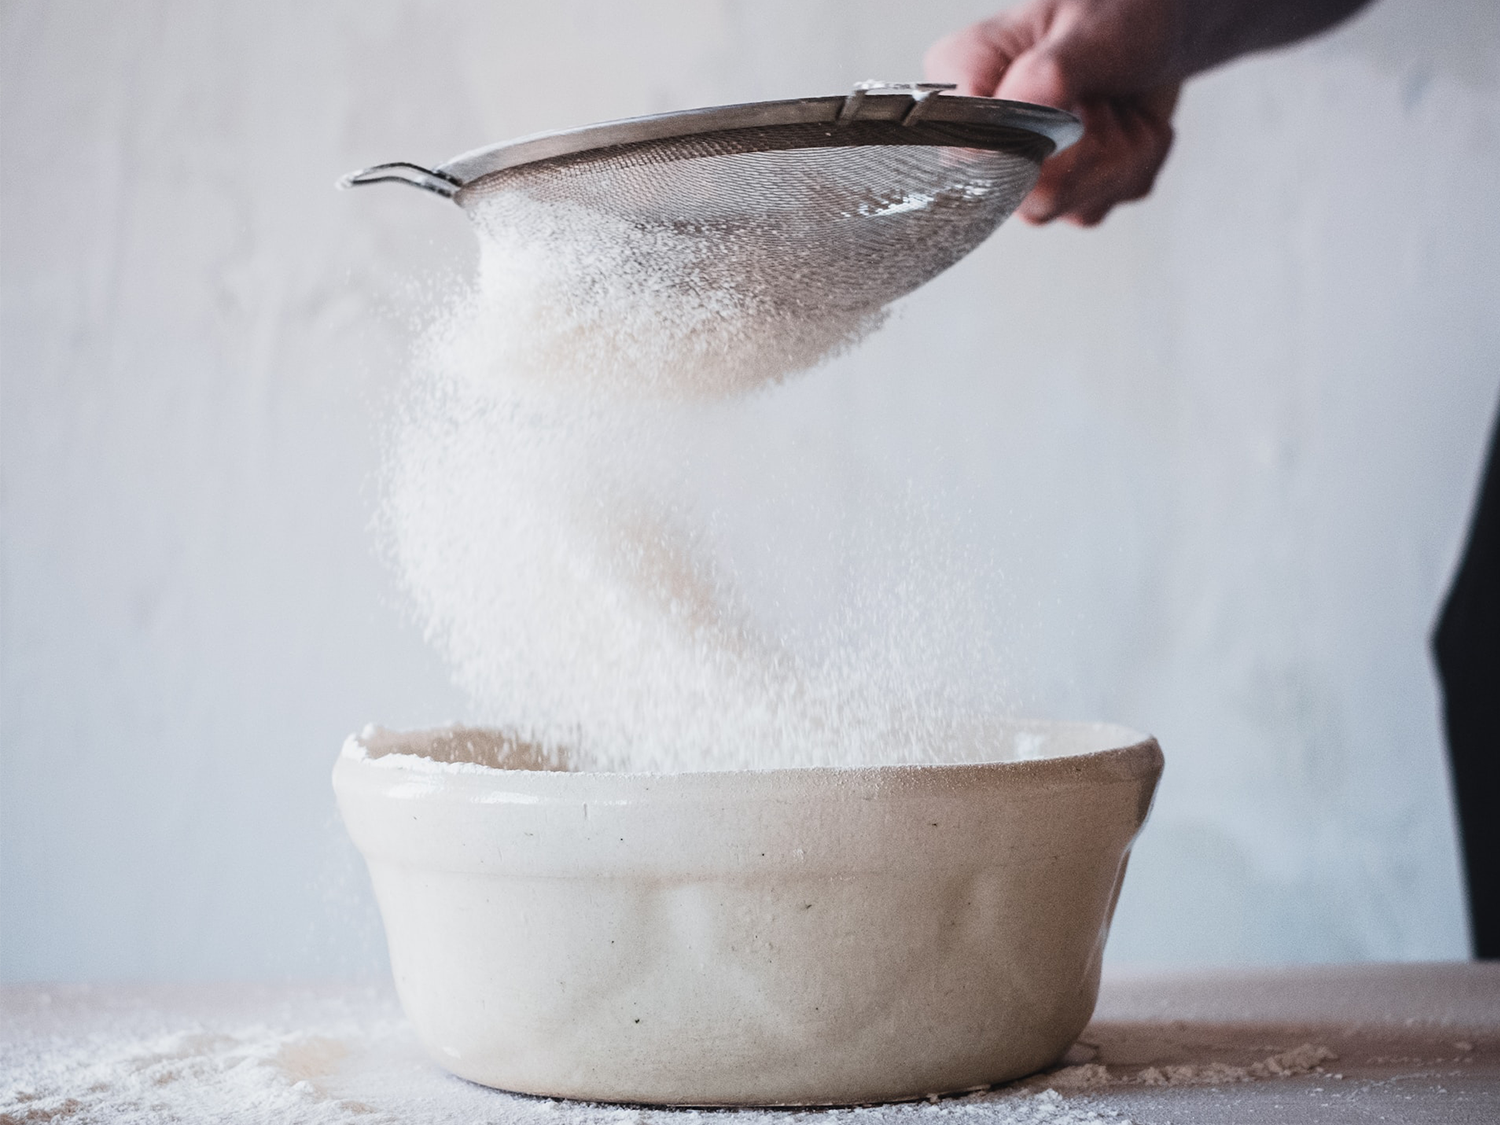 Une personne tamise du sucre dans un bol